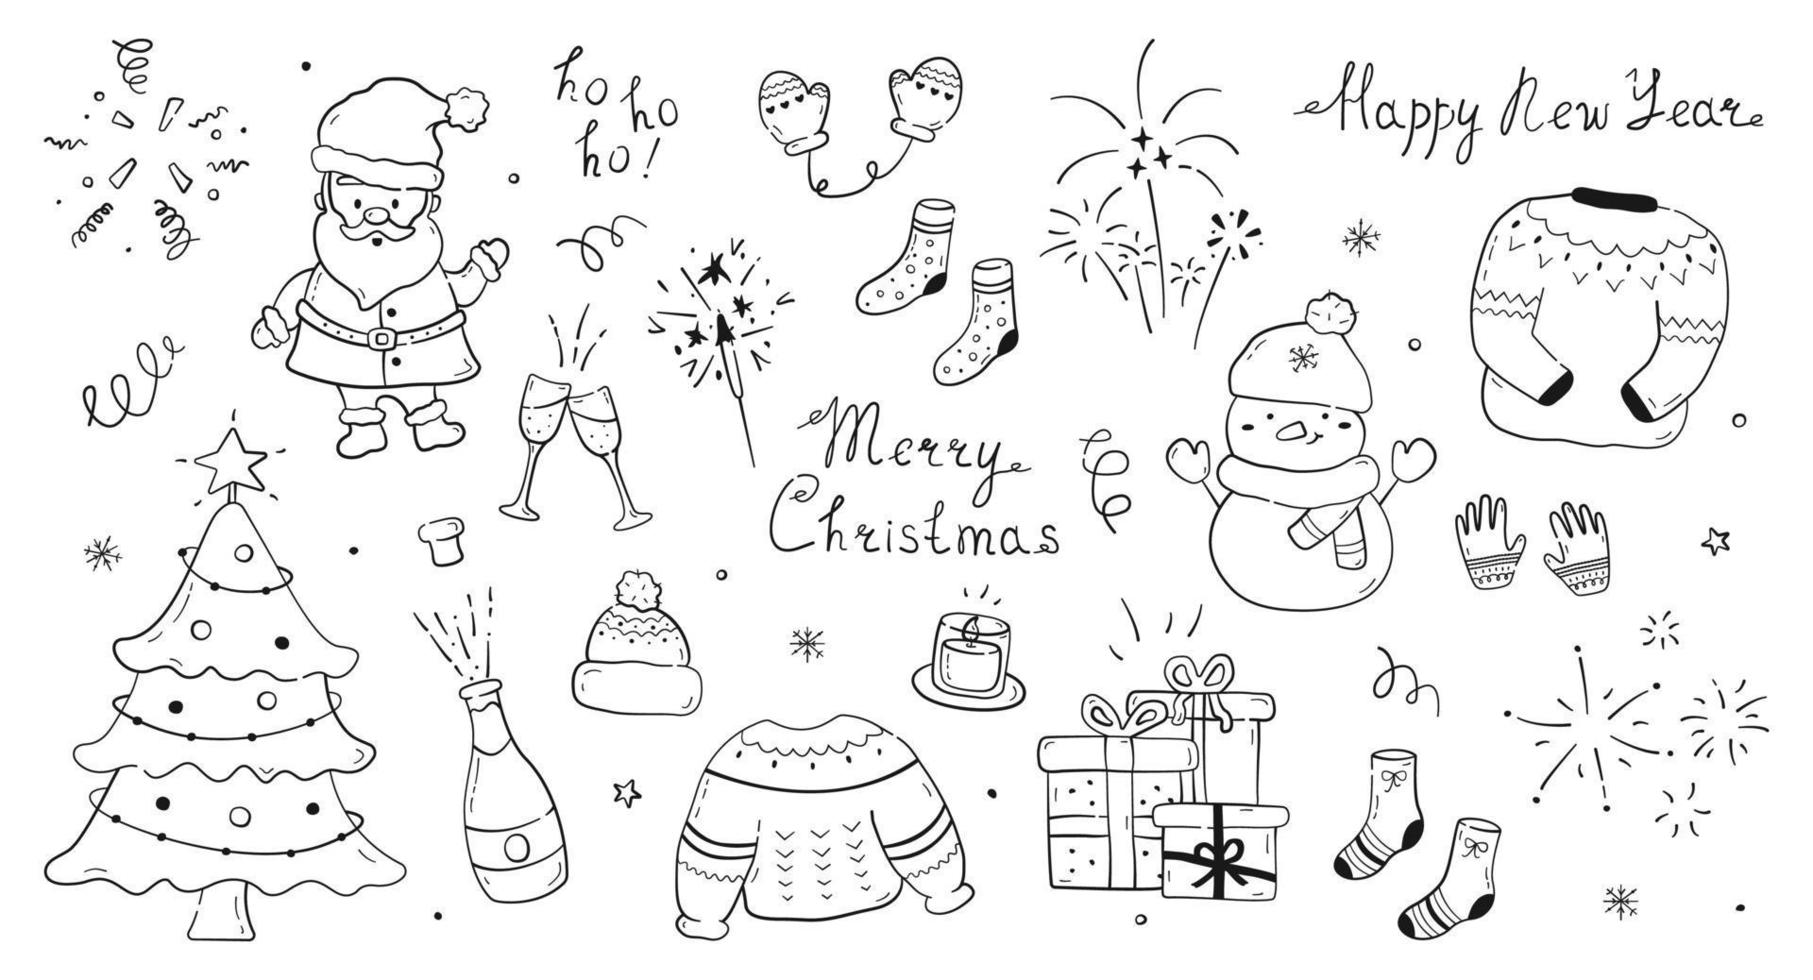 große sammlung von handgezeichneten neujahrselementen und schriftzügen. süße kritzeleien aus weihnachtsfiguren und baum, champagner, wunderkerze, feuerwerk, konfetti, kerze, geschenkboxen und winterkleidung. vektor